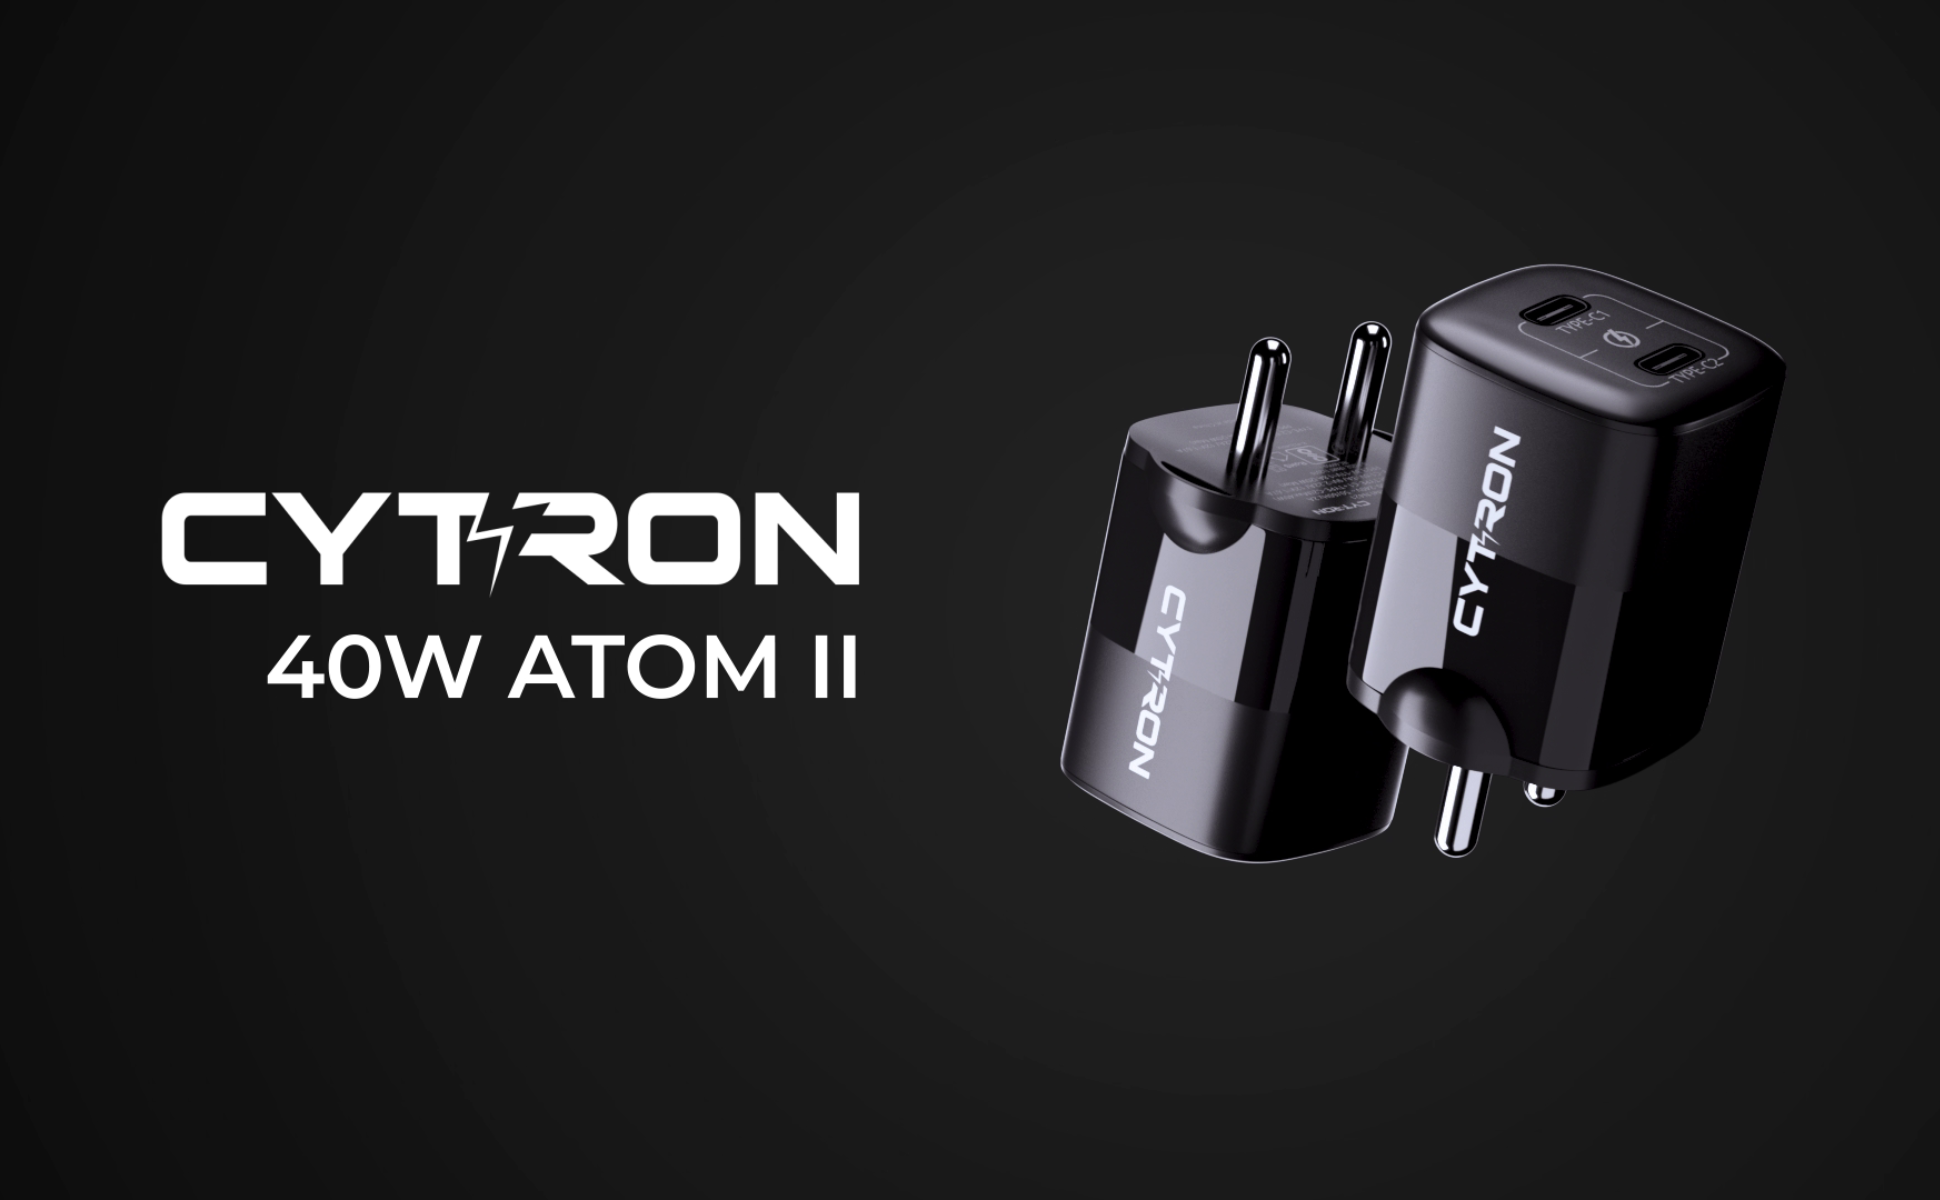 Load video: 40w Cytron Atom II